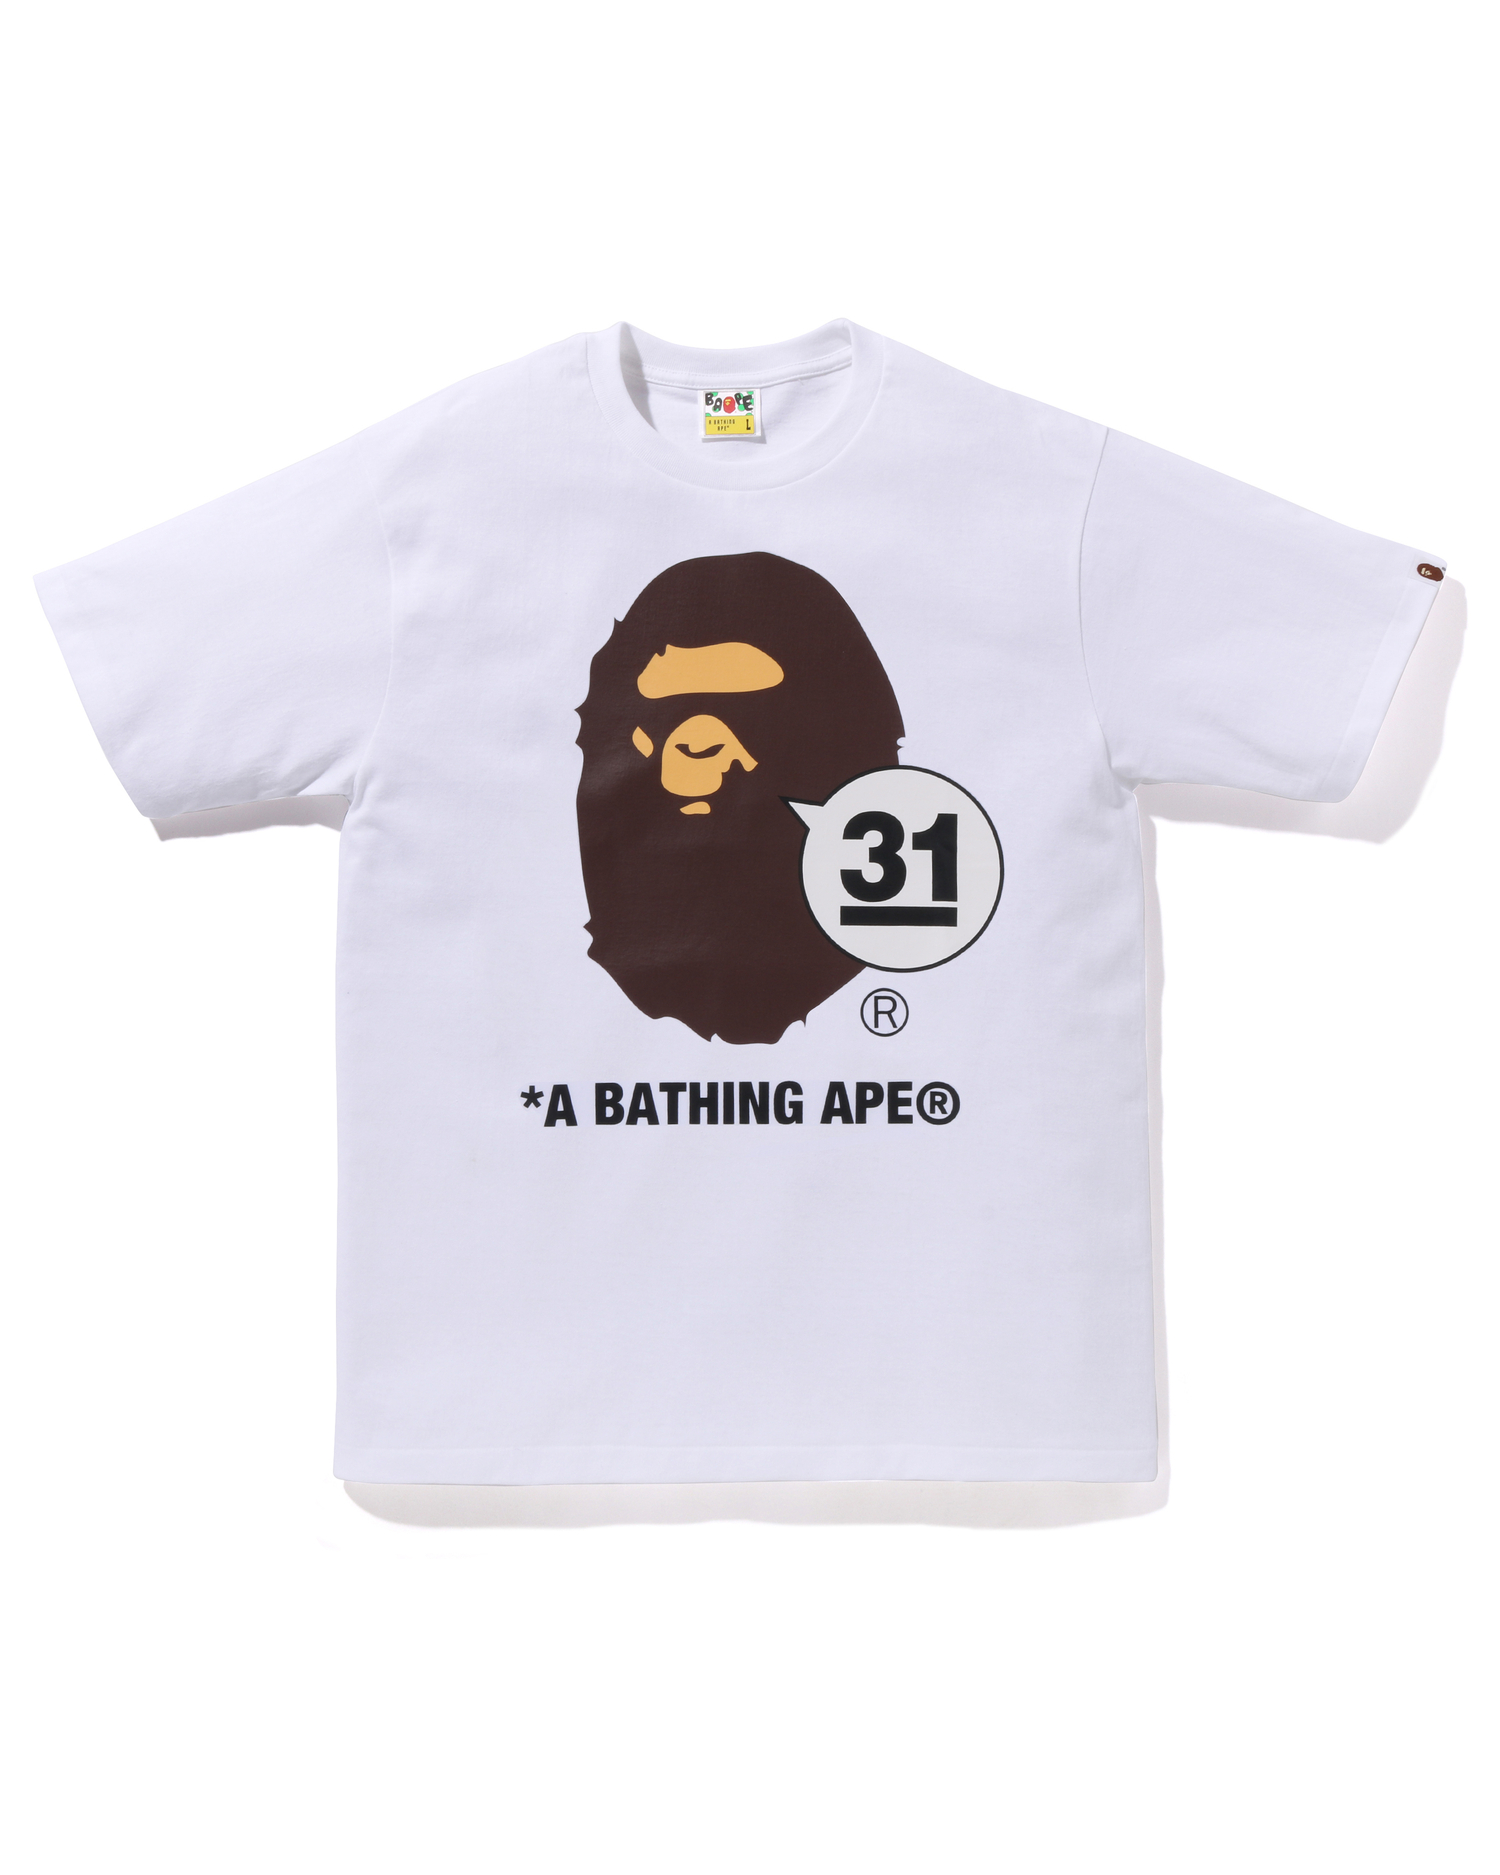 Shop A Bathing Ape 31st Anniv. Ape Head Tee Online | BAPE